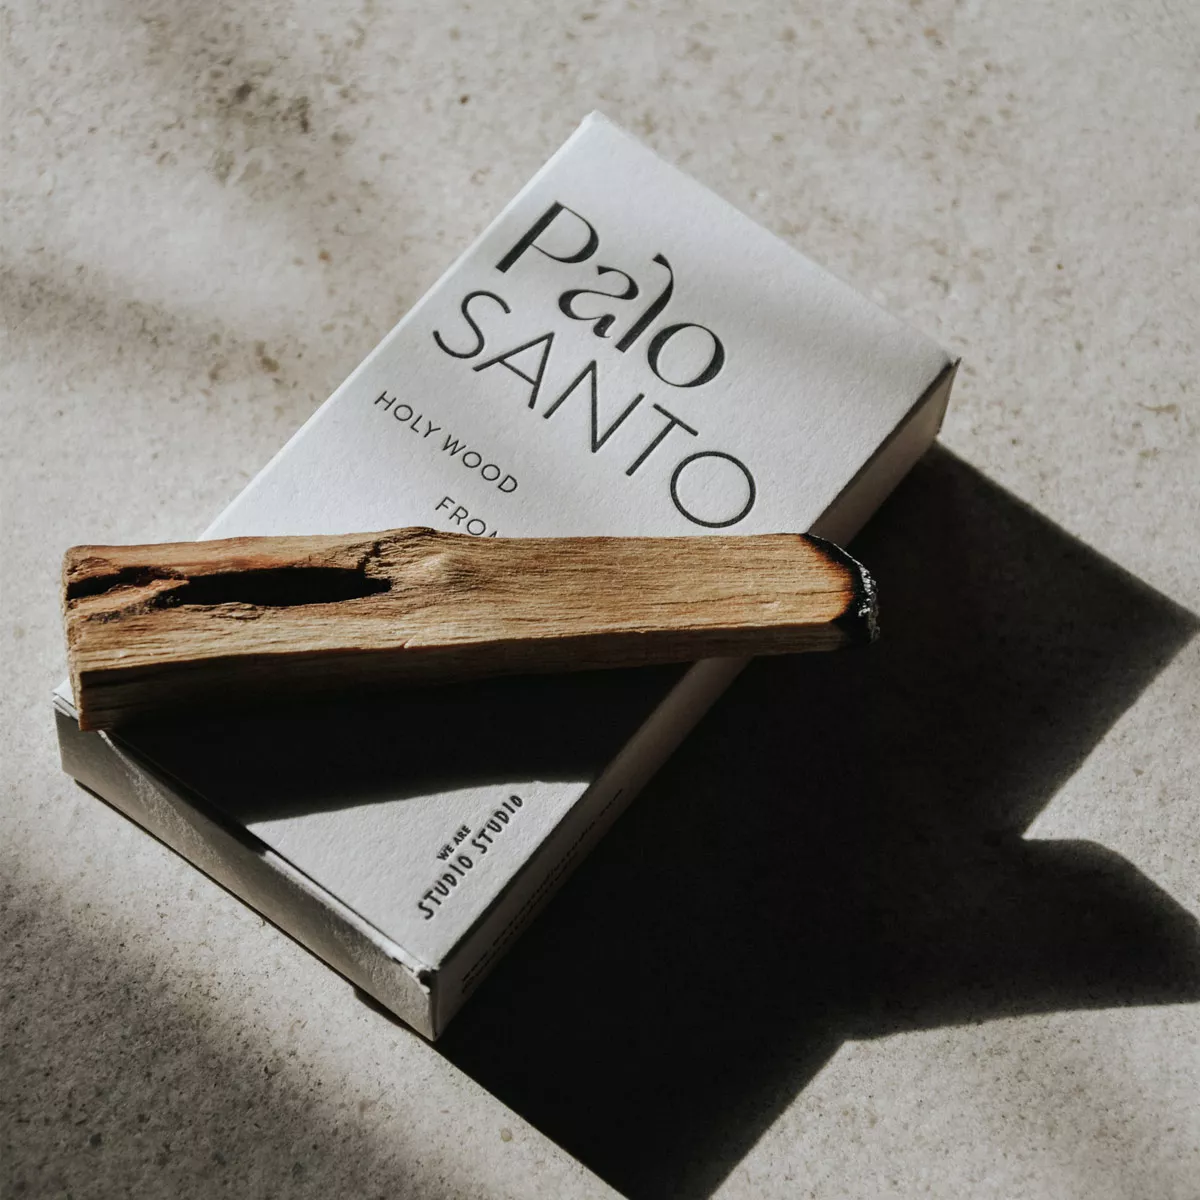 Palo Santo Holz.